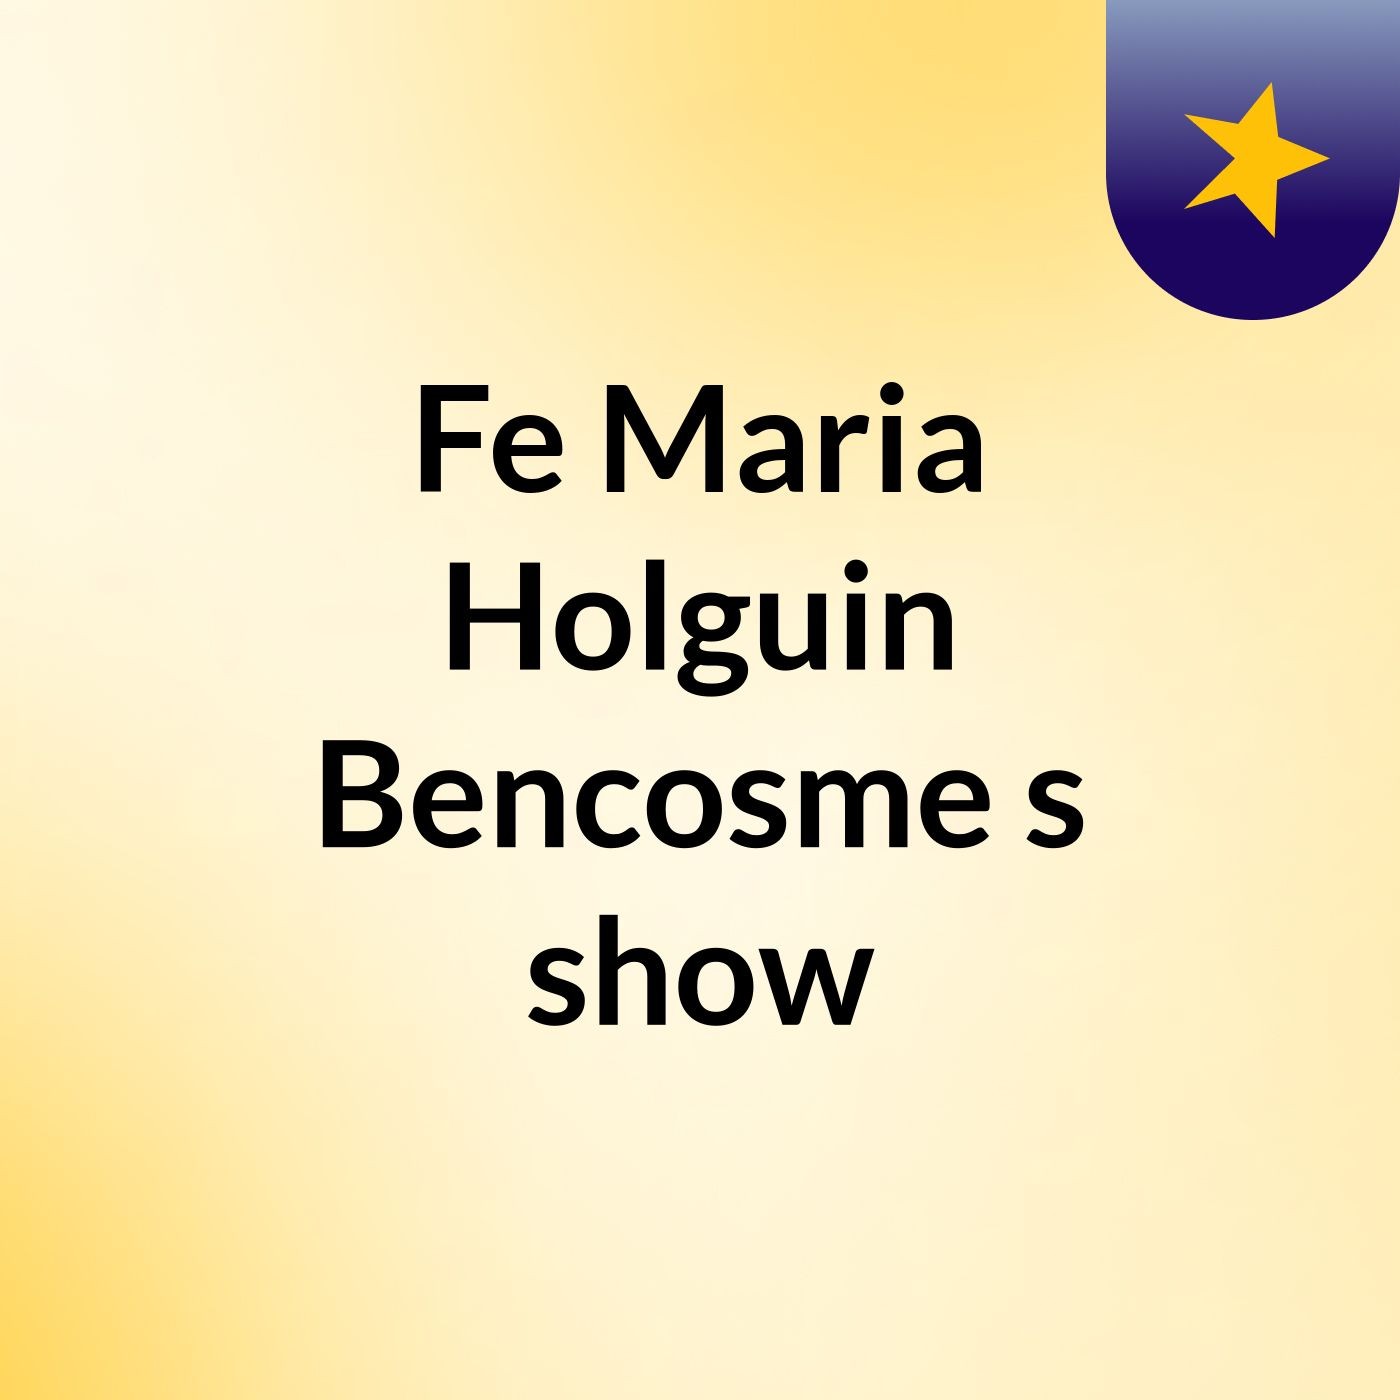 Fe Maria Holguin Bencosme's show